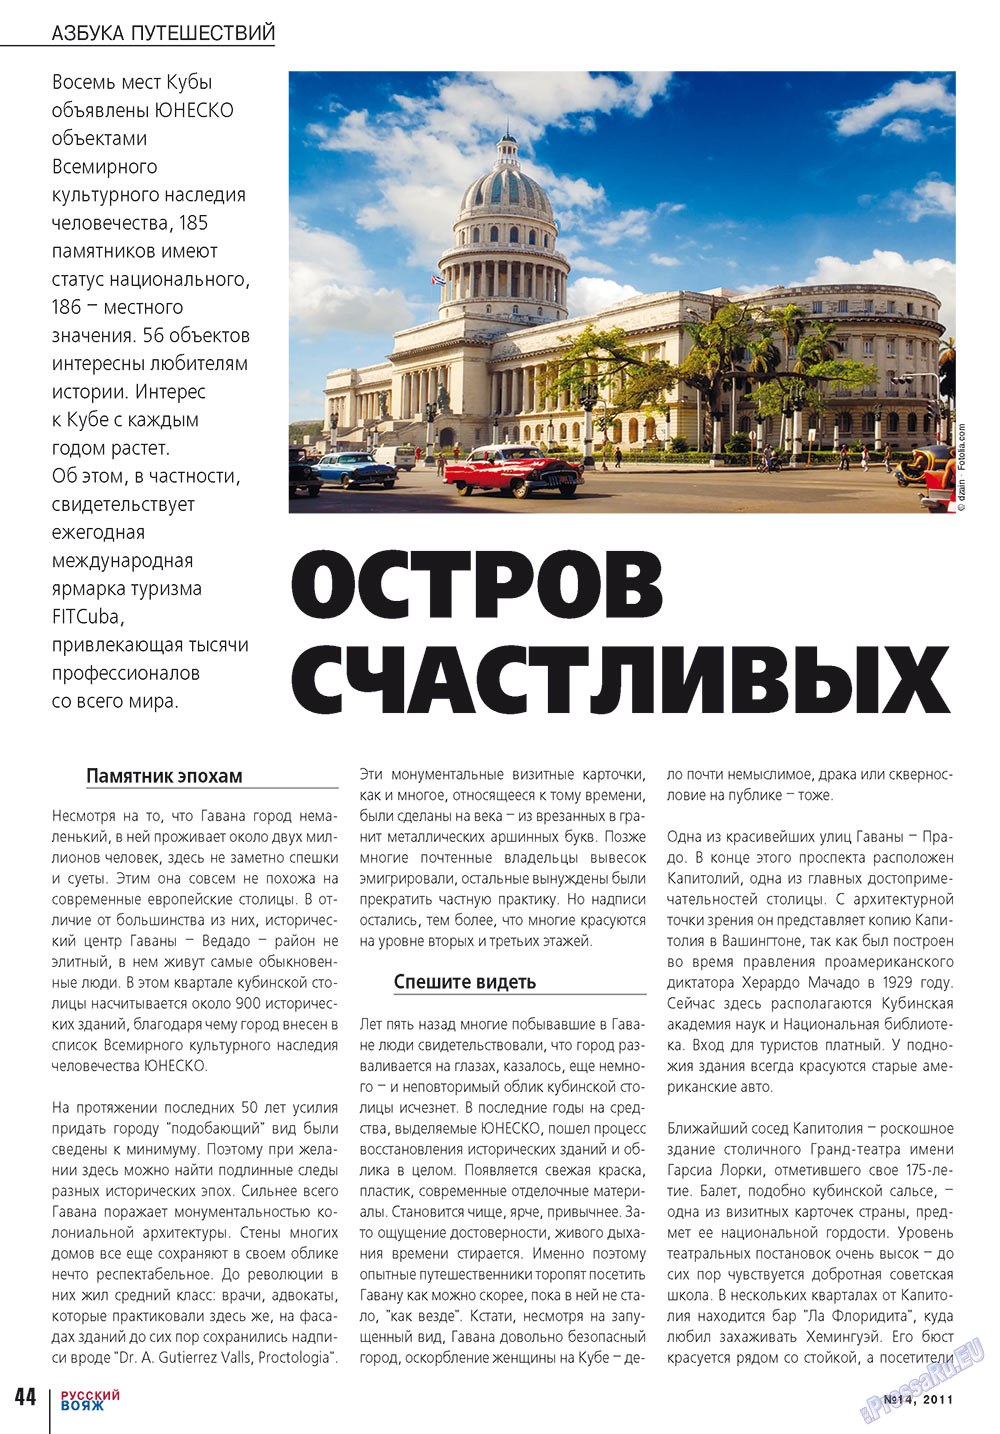 Русский вояж (журнал). 2011 год, номер 14, стр. 44